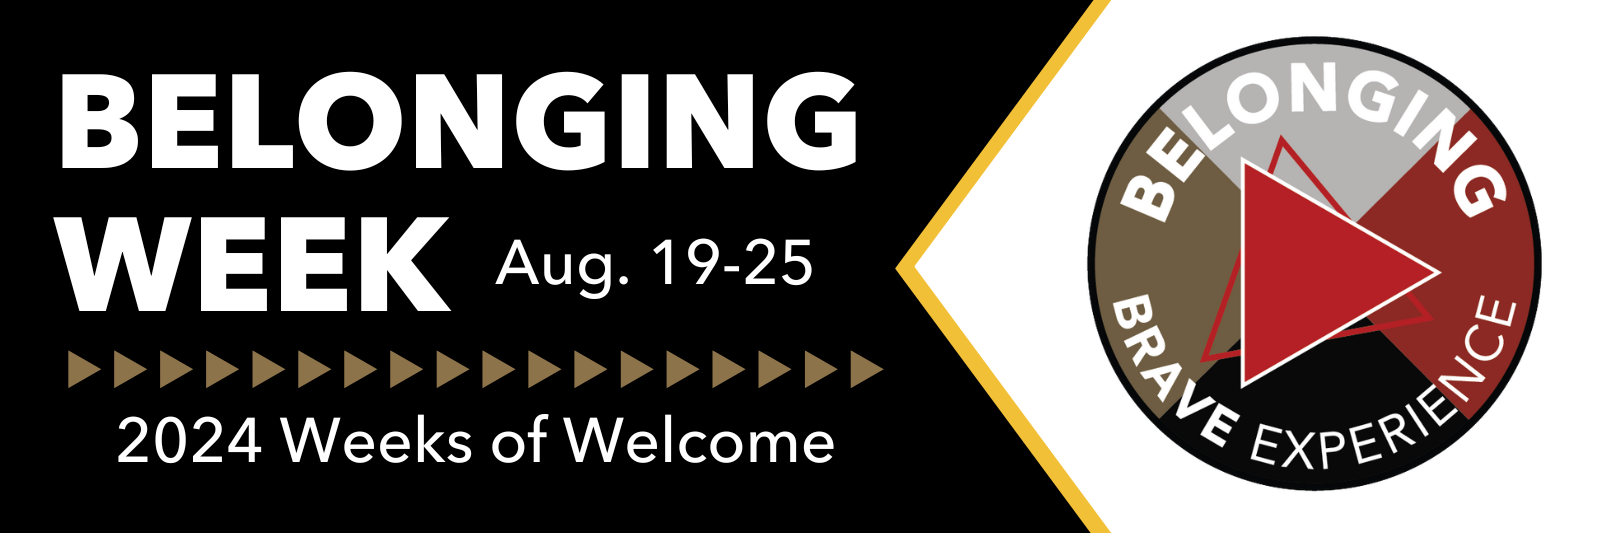 Belonging Week: August 19-25